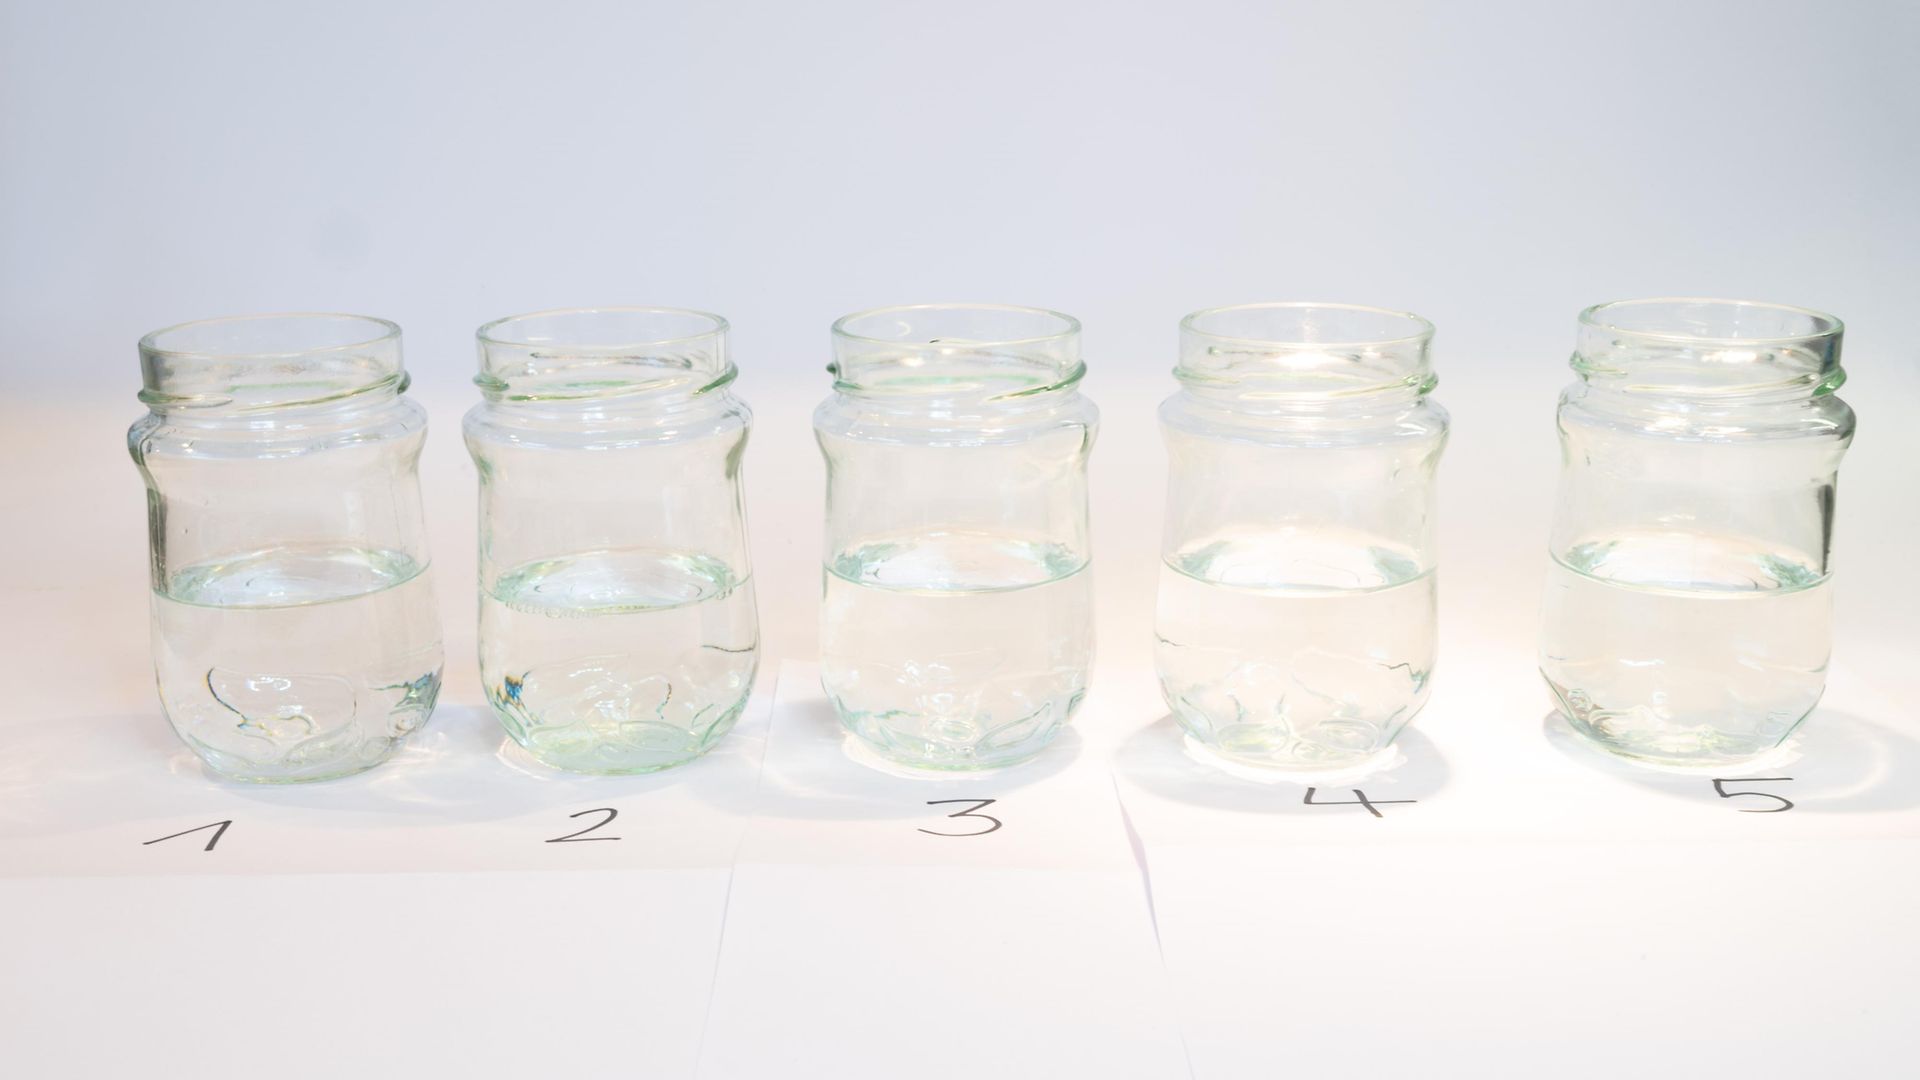 rząd pięciu szklanych słoików z klarownymi płynami